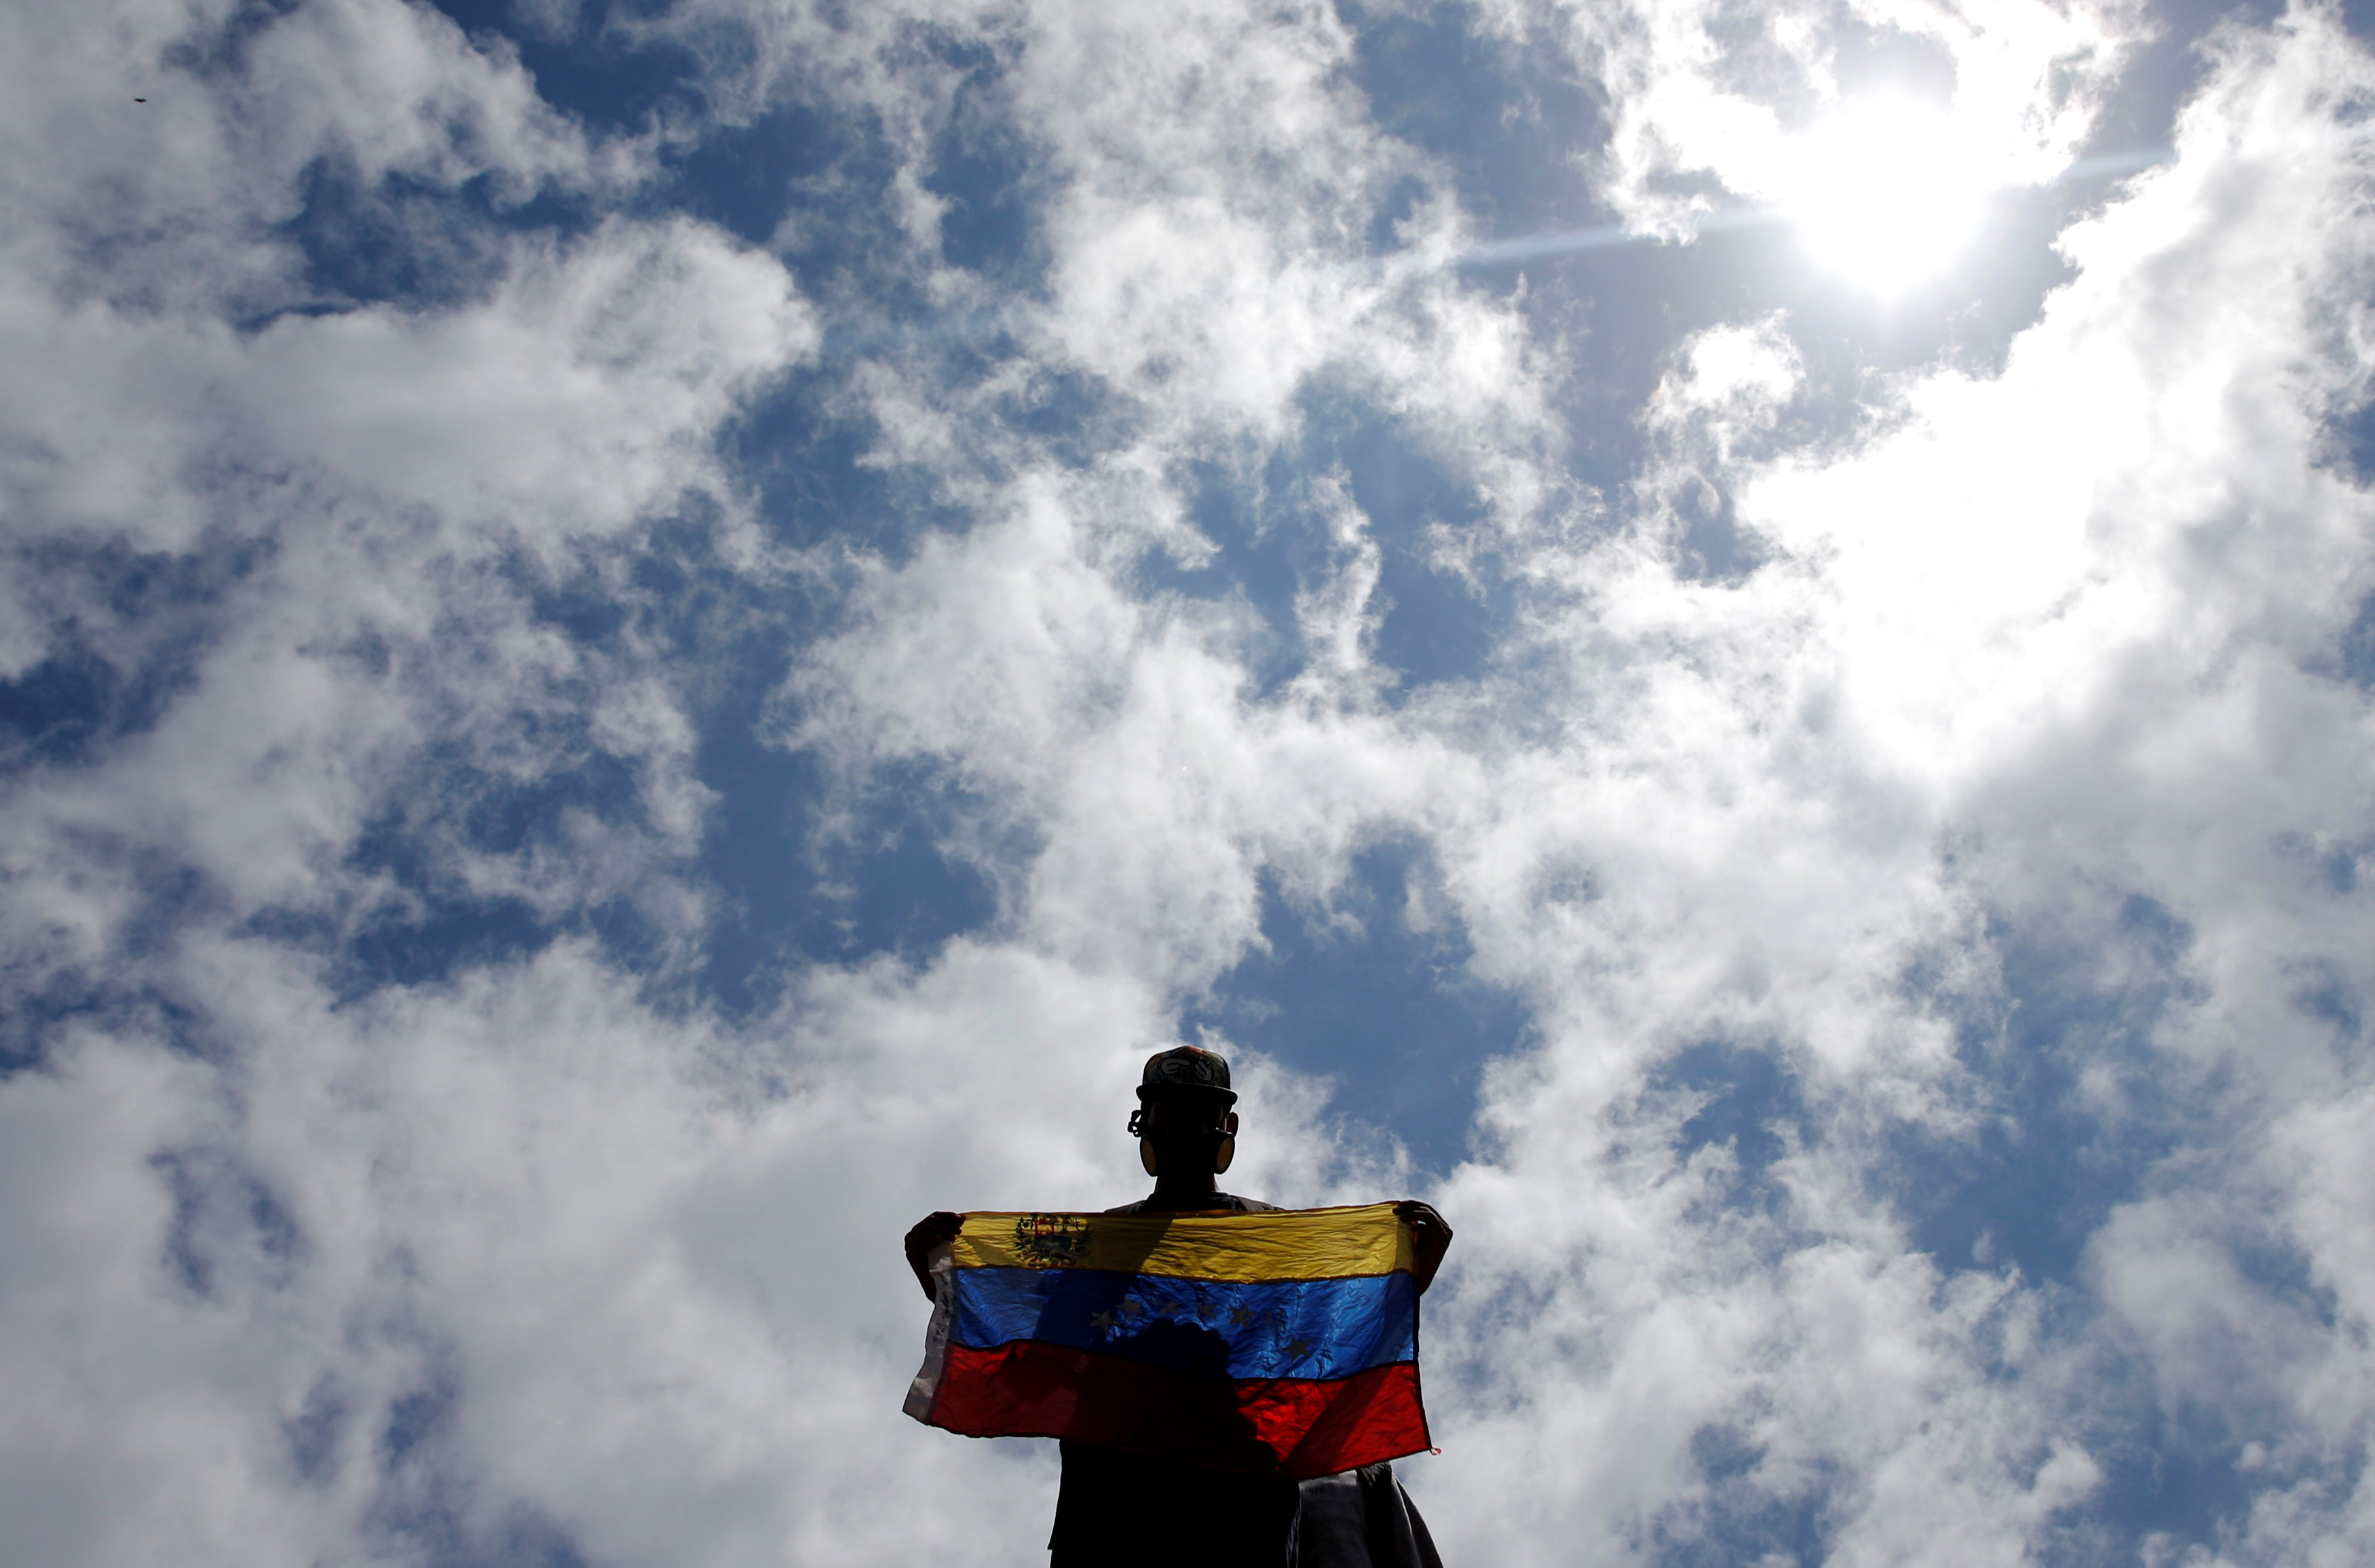 Oposición vuelve a marchar en Venezuela entre gases lacrimógenos